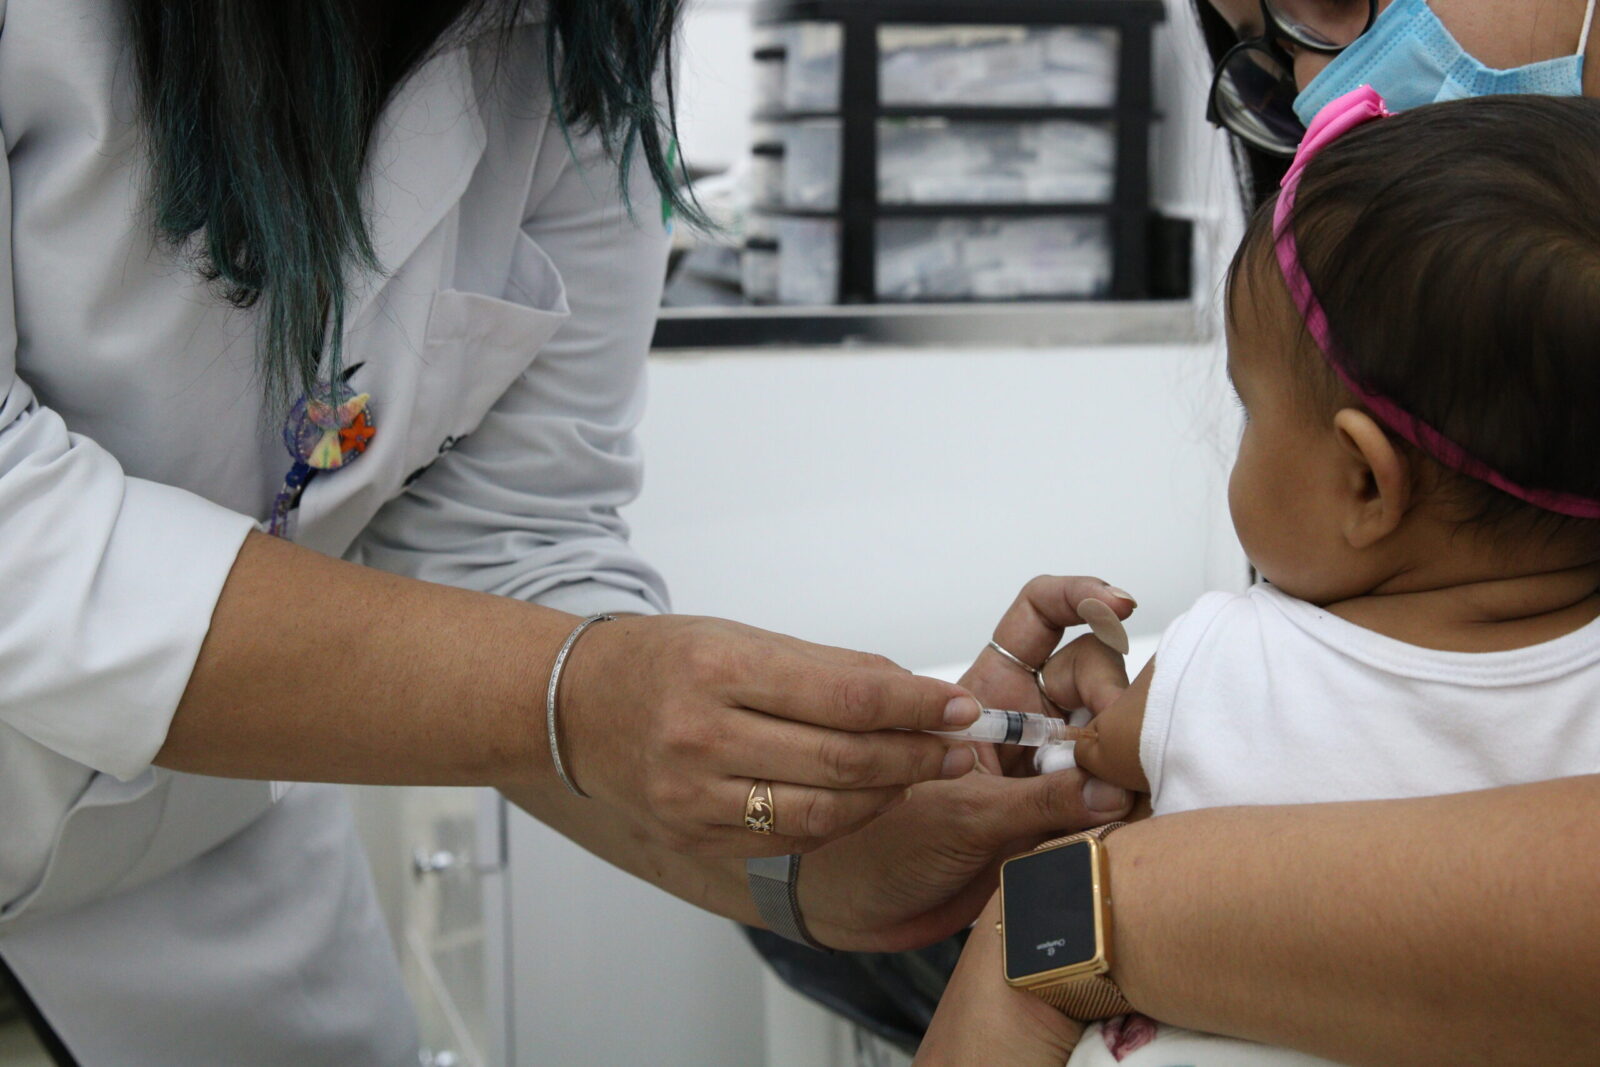 Bebês recebem as vacinas do calendário básico de vacinação do SUS na Unidade Básica de Saúde - UBS Brás. Por: Rovena Rosa/Agência Brasil